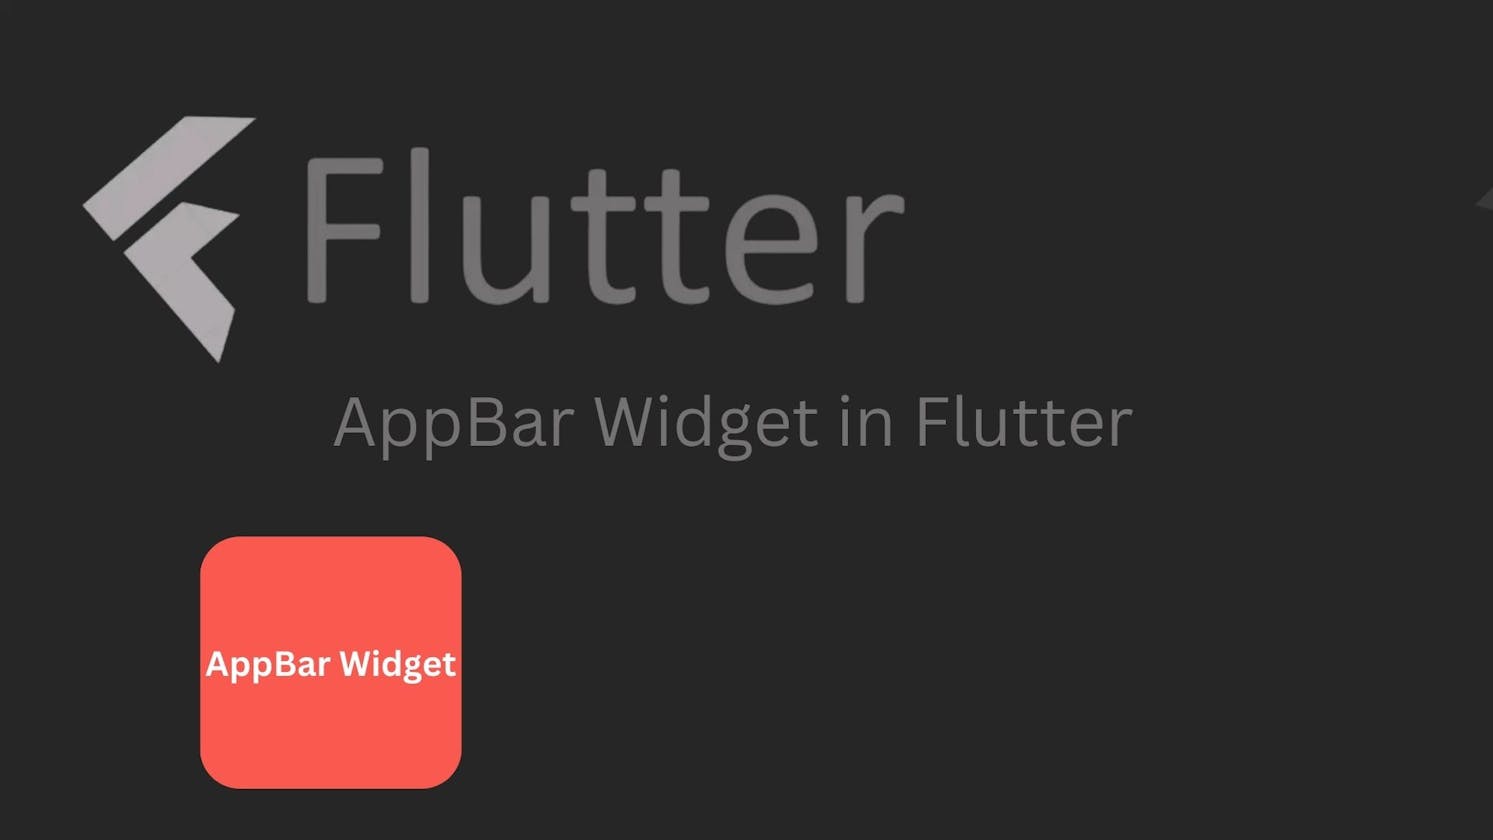 AppBar Widget in Flutter